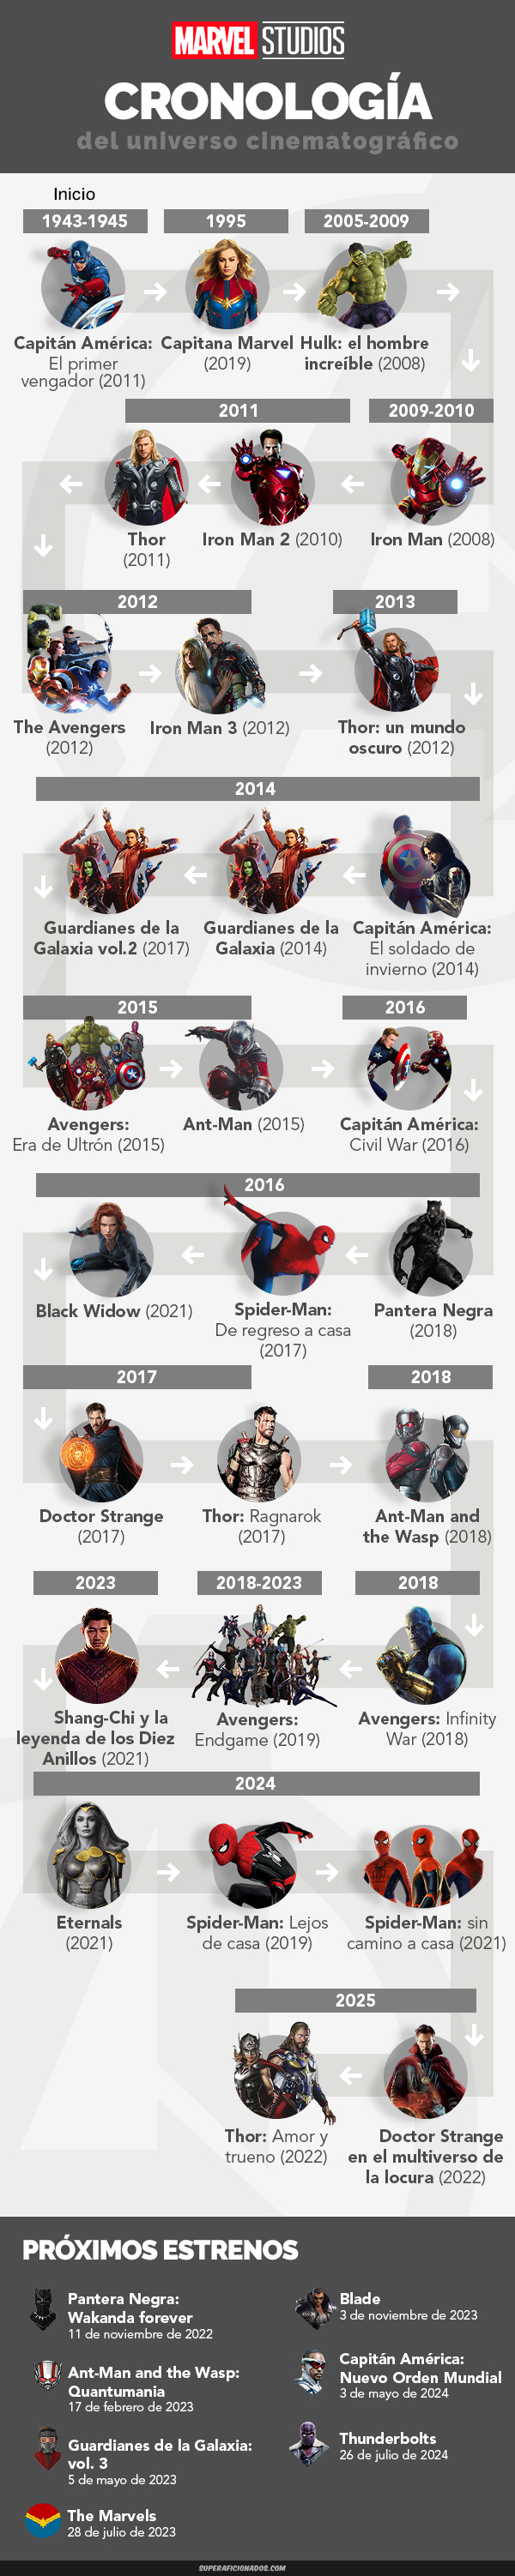 Orden cronológico de películas de Marvel infografía) - SuperAficionados